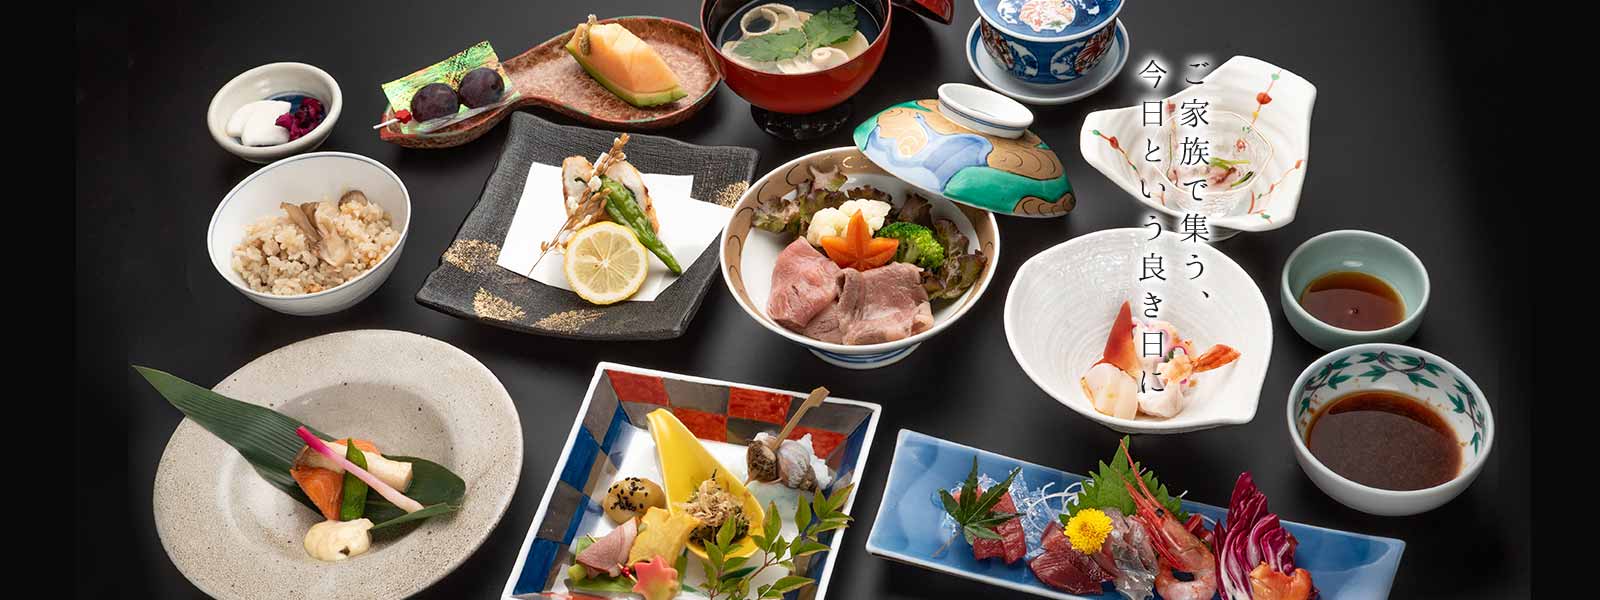 蔵の街への素敵な旅、かんぴょうを使ったお料理で栃木の四季を味わう